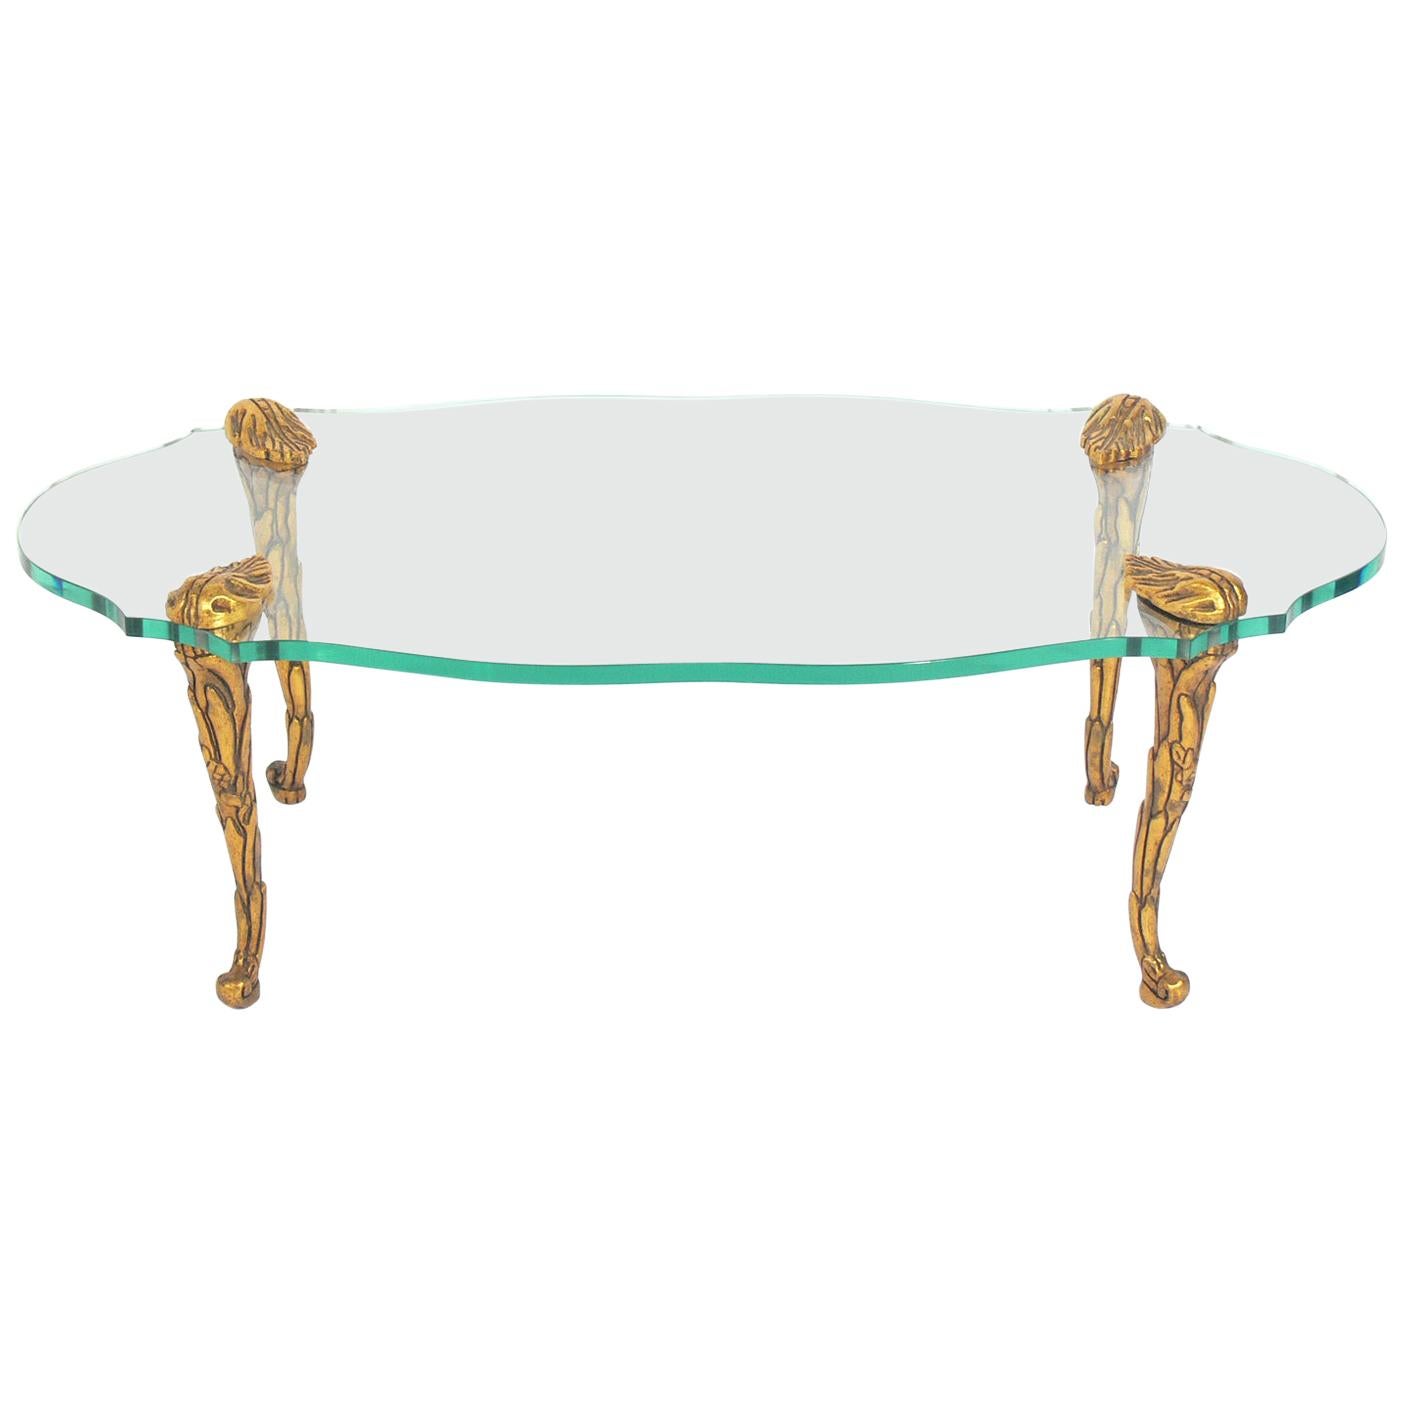 Élégante table basse en bois doré et verre